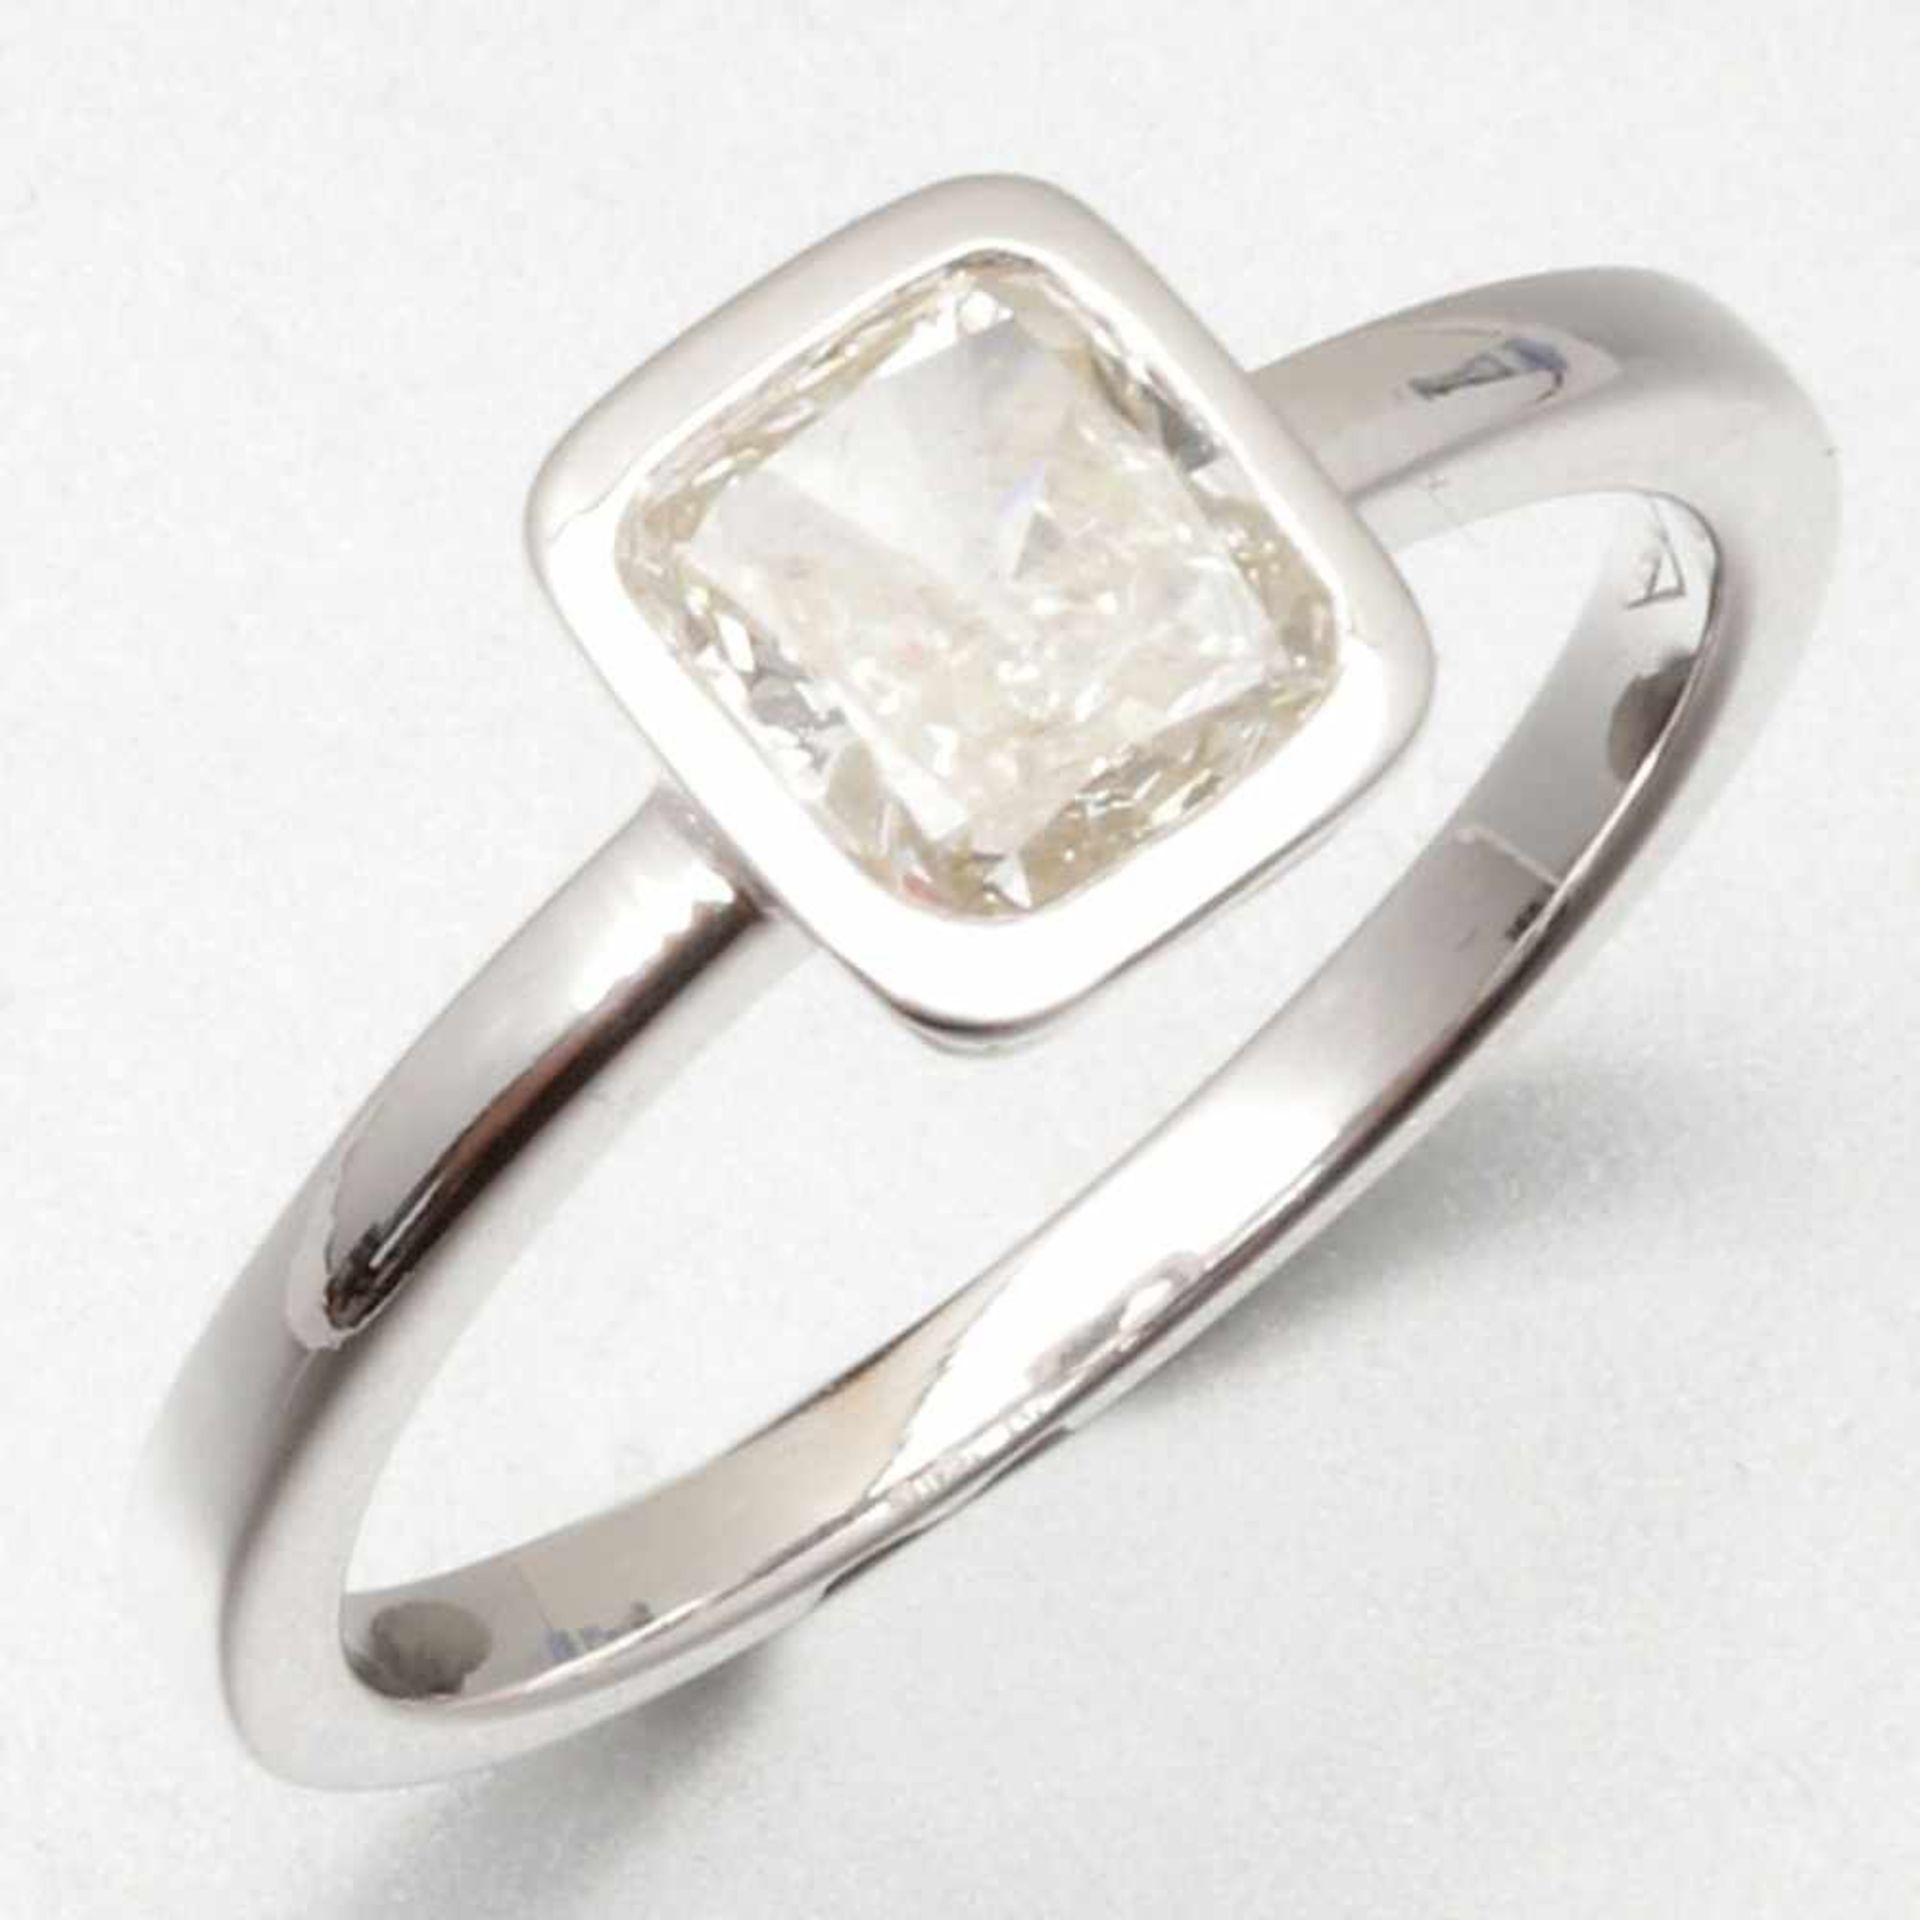 Solitär-Diamantring750/- Weißgold, ungestempelt. Gewicht: 2,6g. 1 Diamant von 0,90ct (H/si).